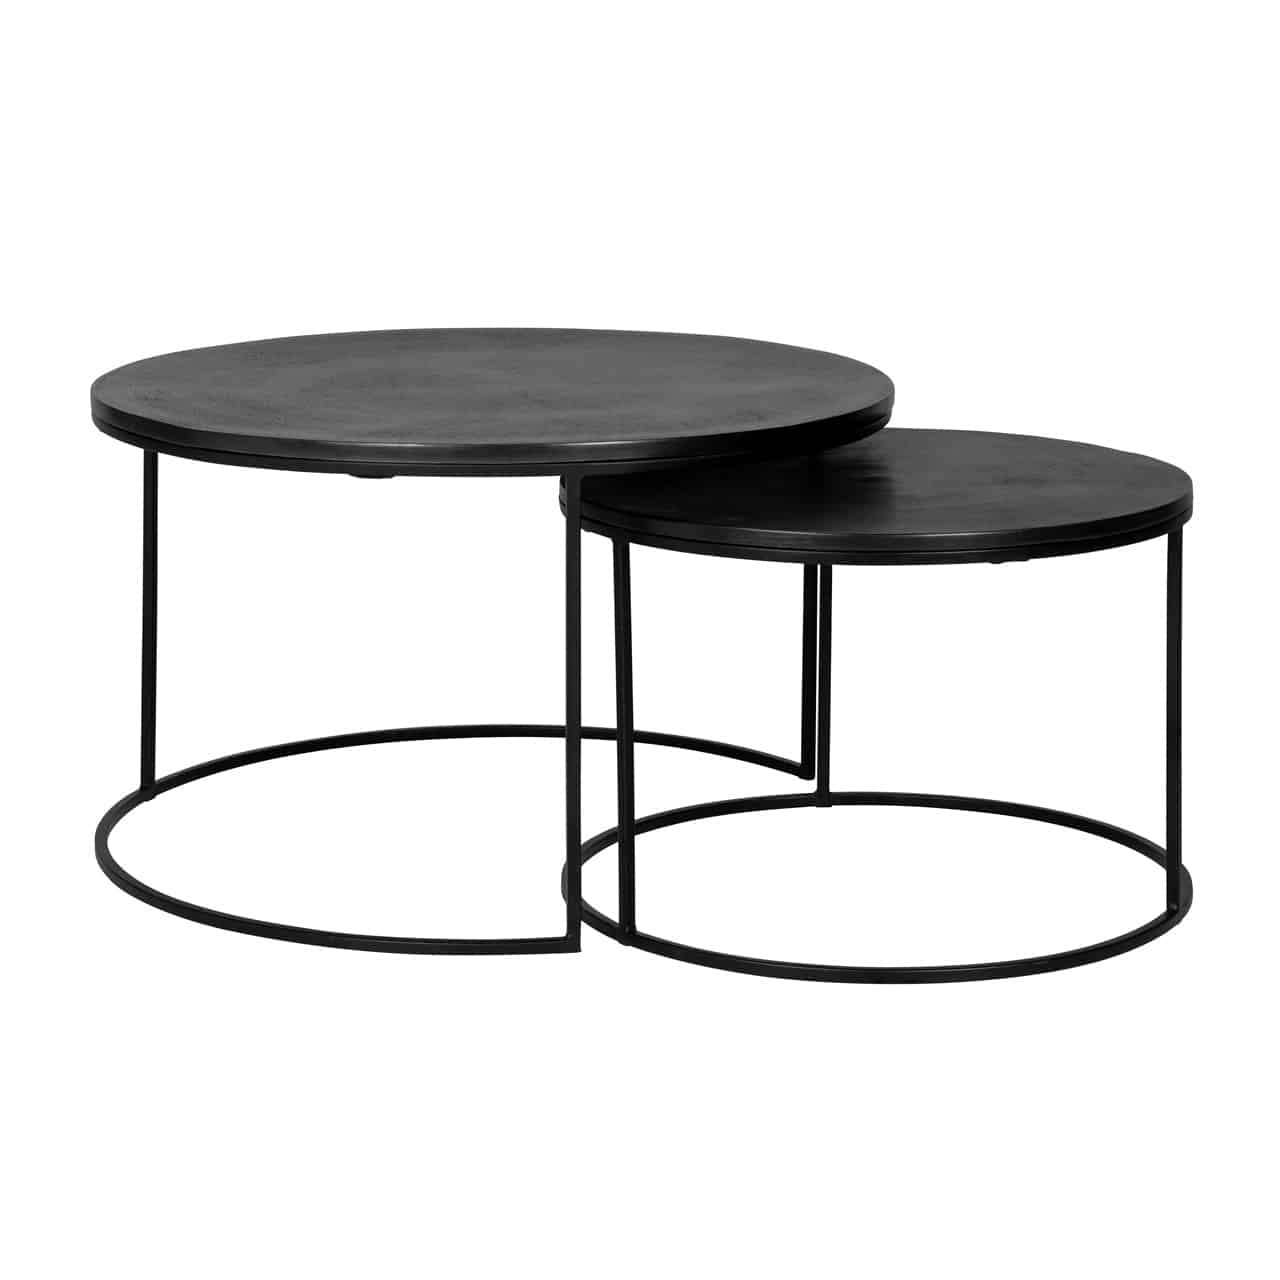 Couchtisch 2er Set; zwei verschieden hohe runde Tische, die zum Teil ineinandergeschoben sind; das Gestell ist jeweils aus schwarzem Metall gefertigt, mit einer ebenfalls schwarzen Tischplatte..